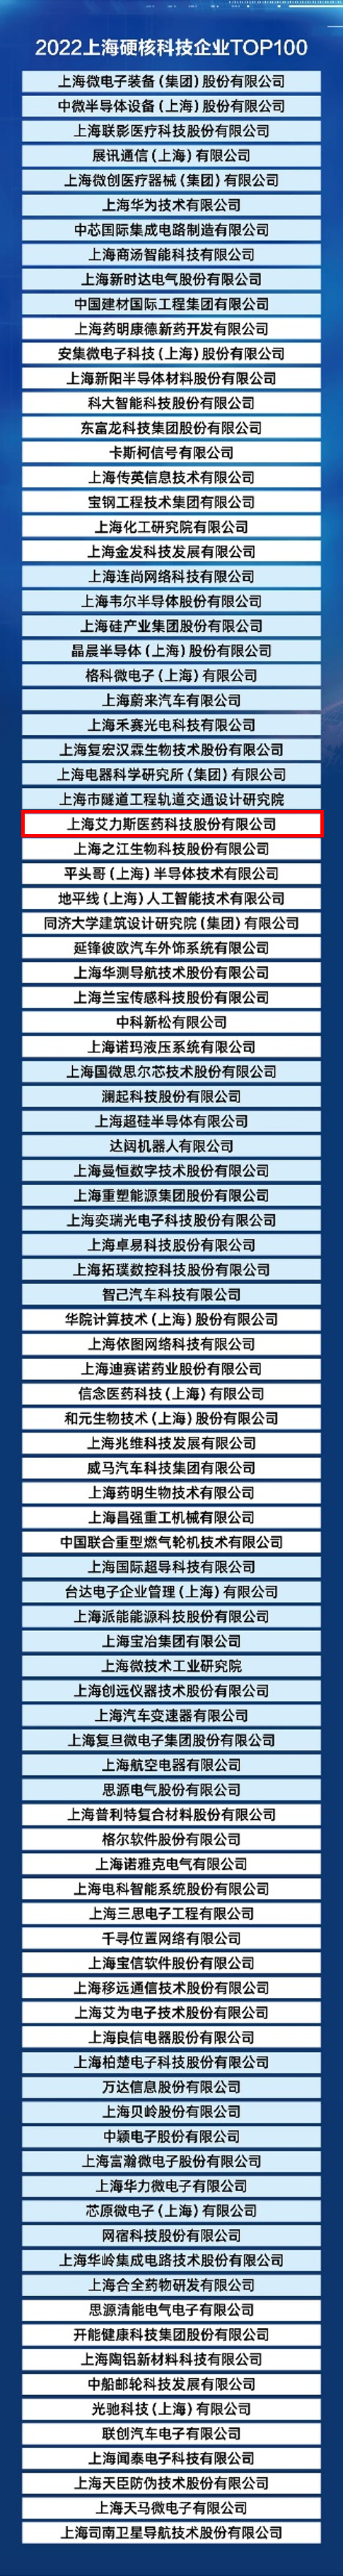 艾力斯上榜“2022上海硬核科技企业TOP100”.png